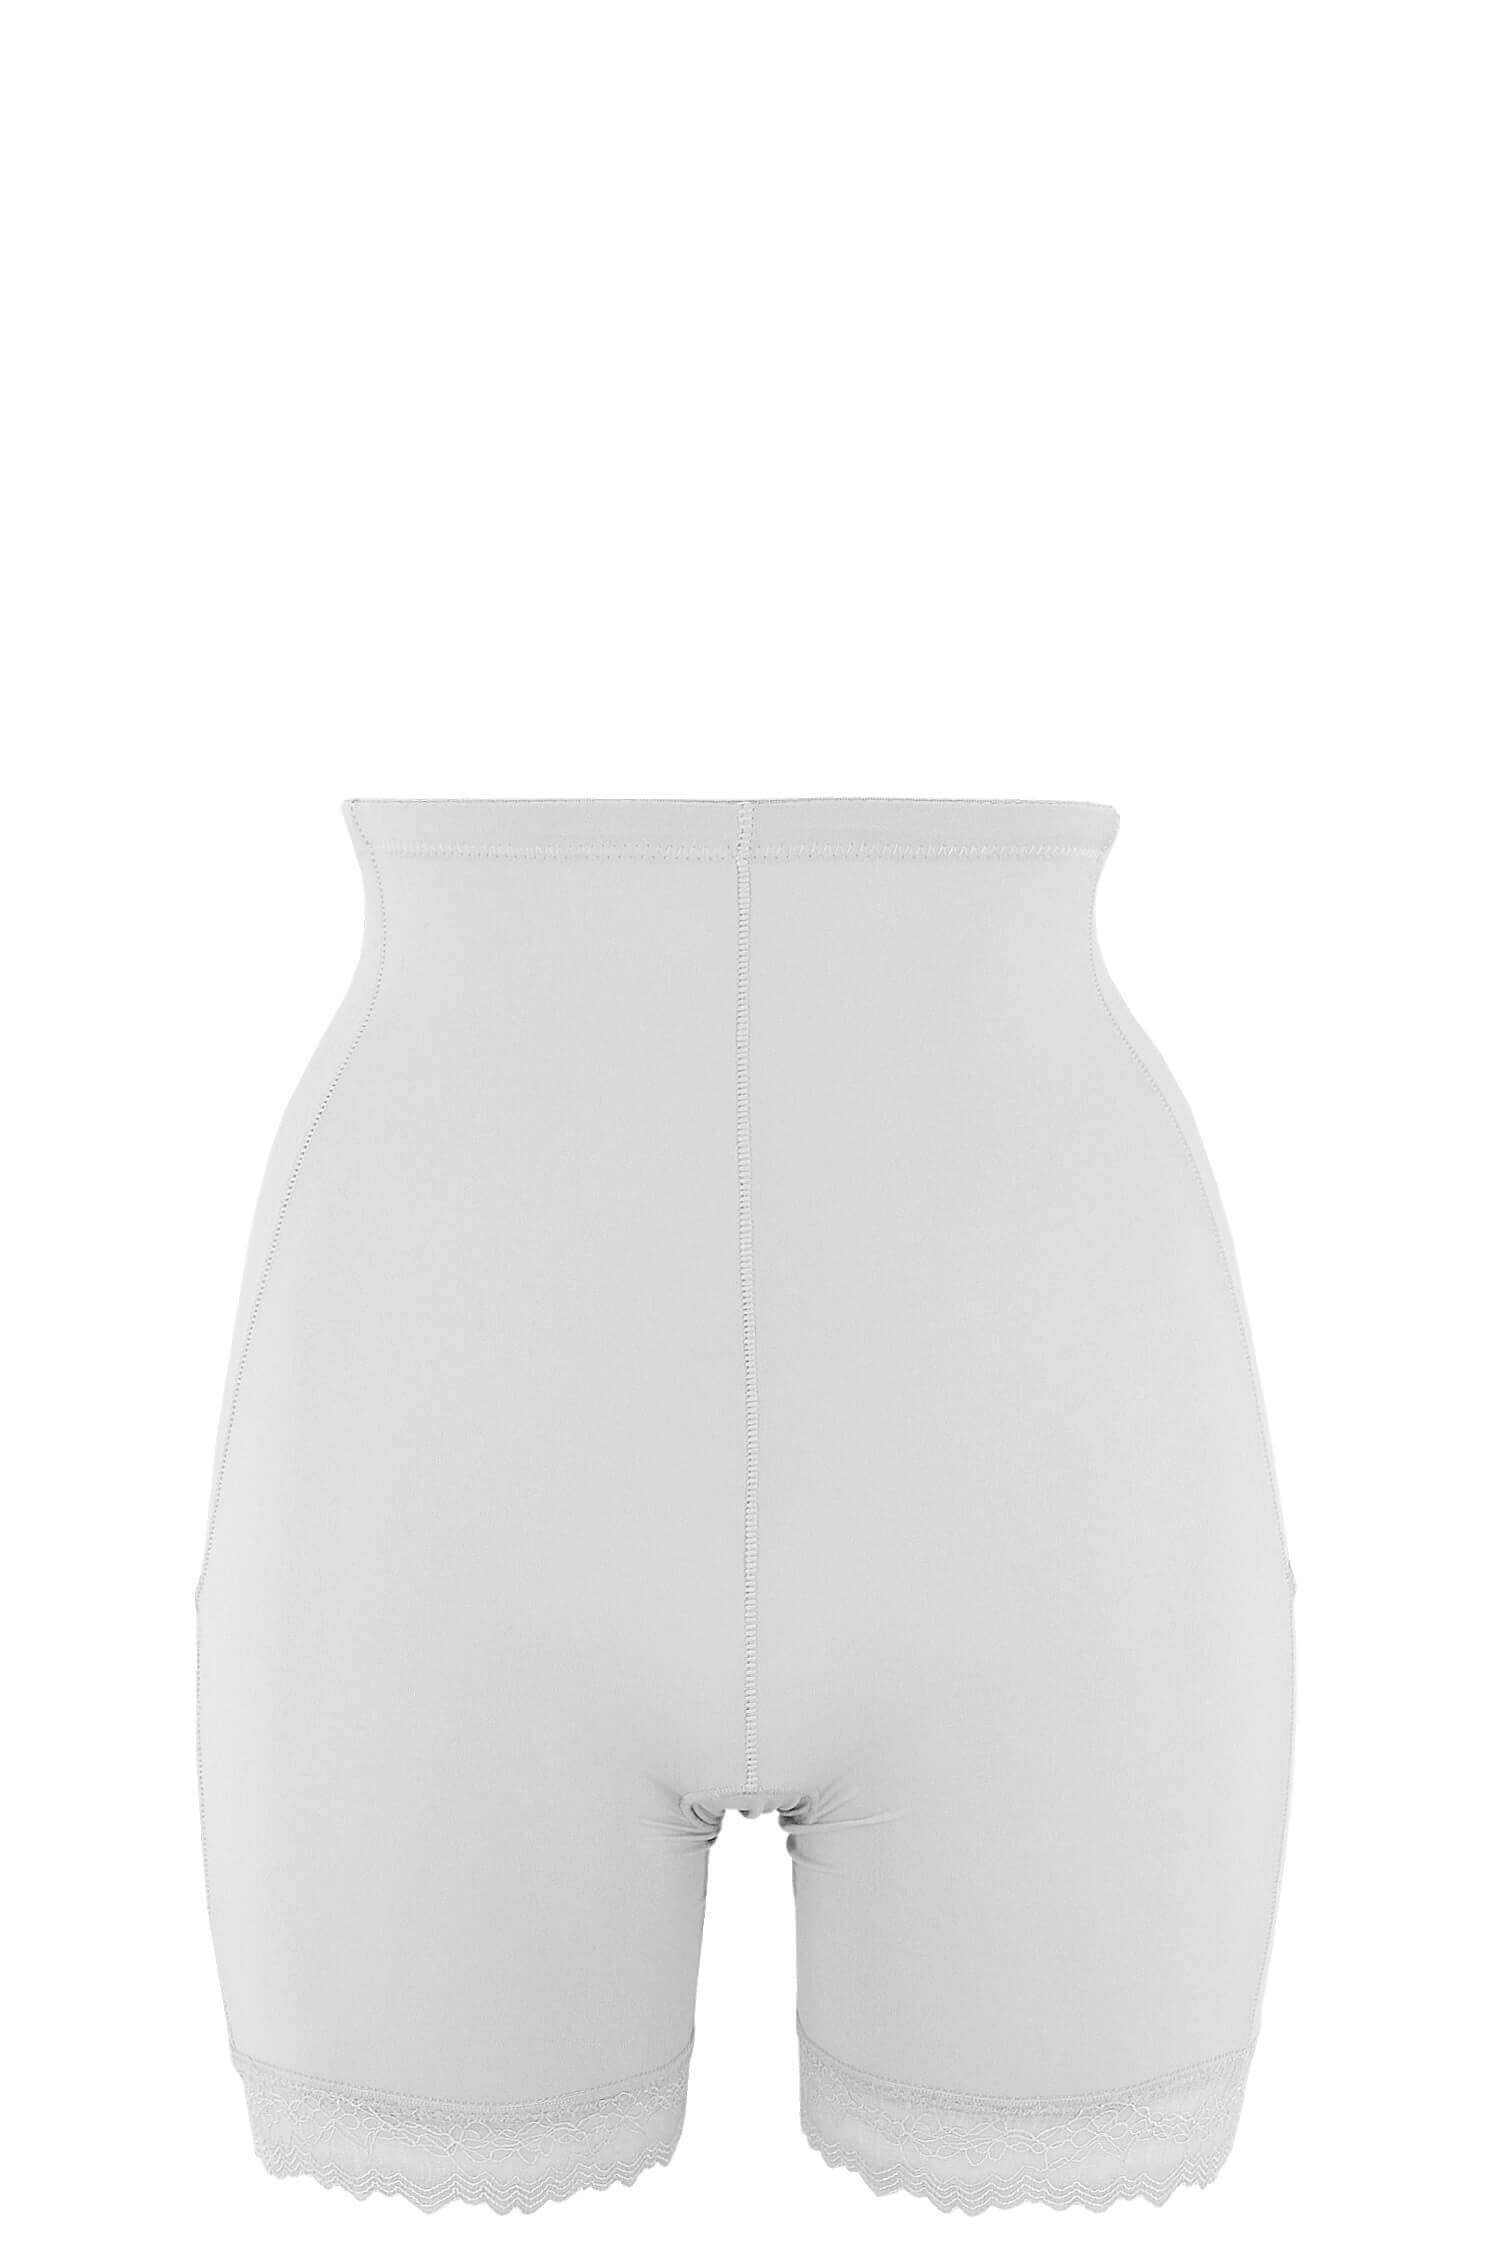 Floreta stahovací kalhotky do pasu s nohavičkou 5589 M bílá